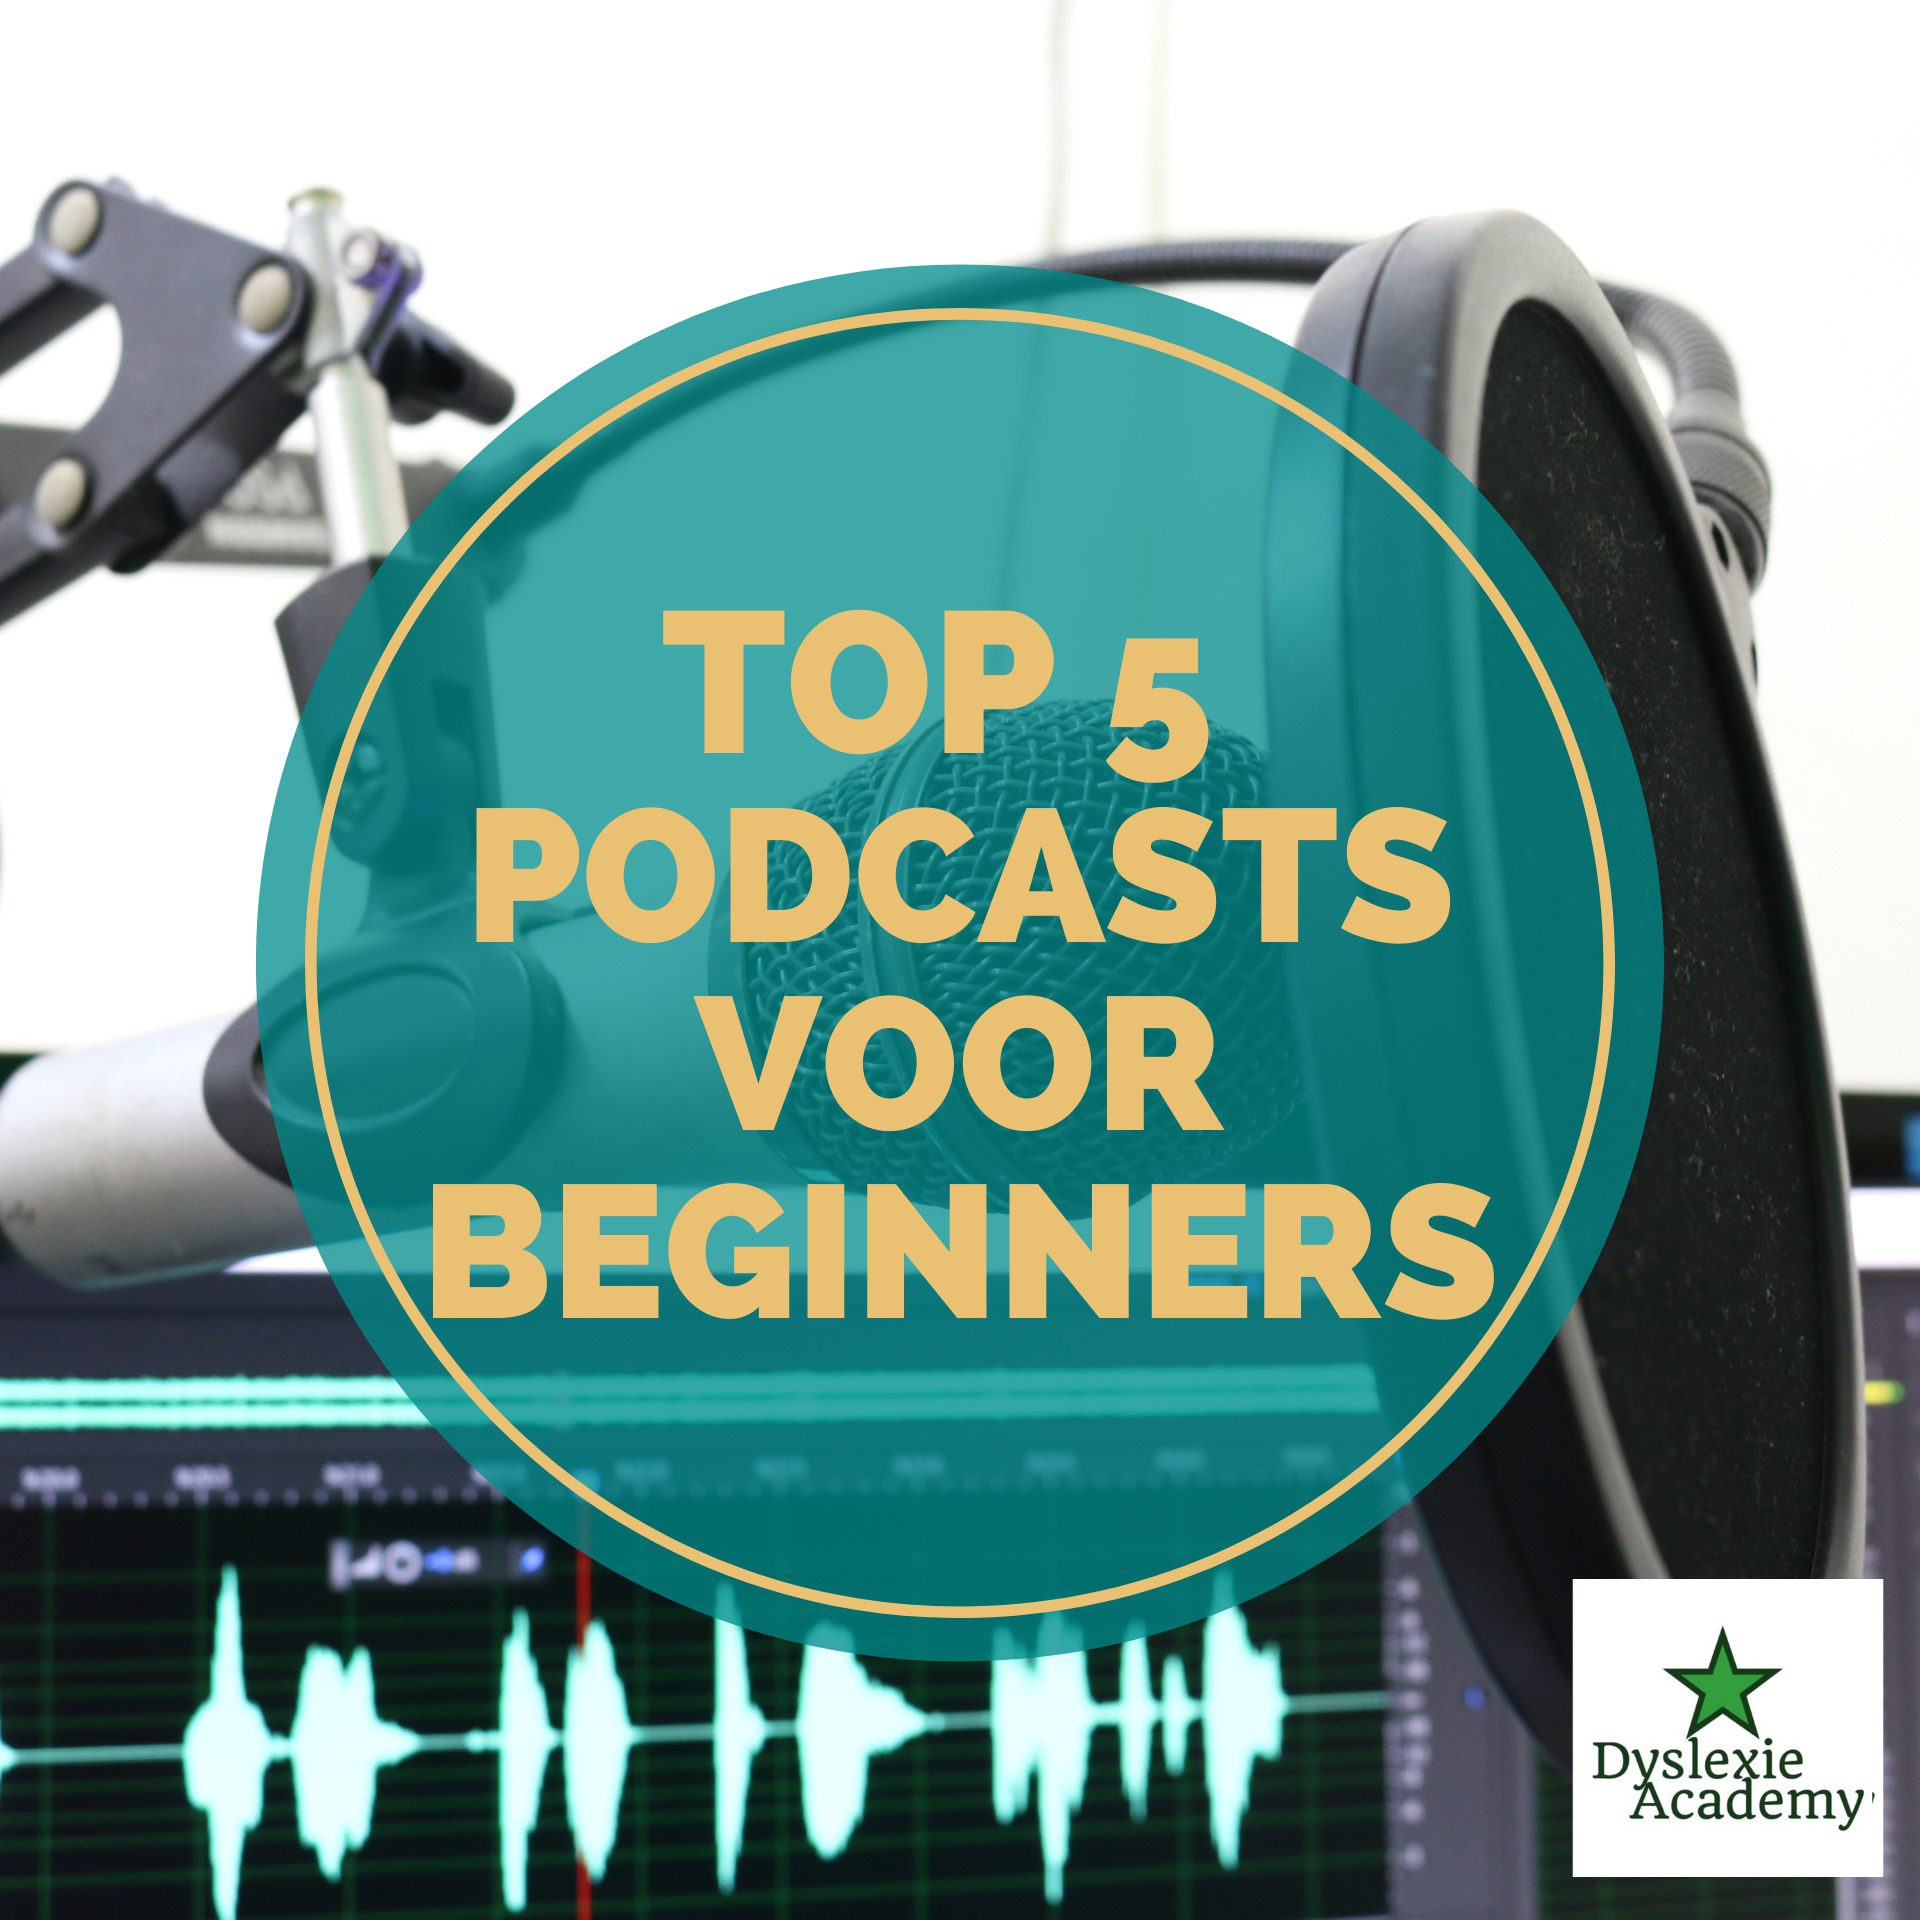 Je bekijkt nu Top 5 Gratis Podcasts Engels voor Beginners